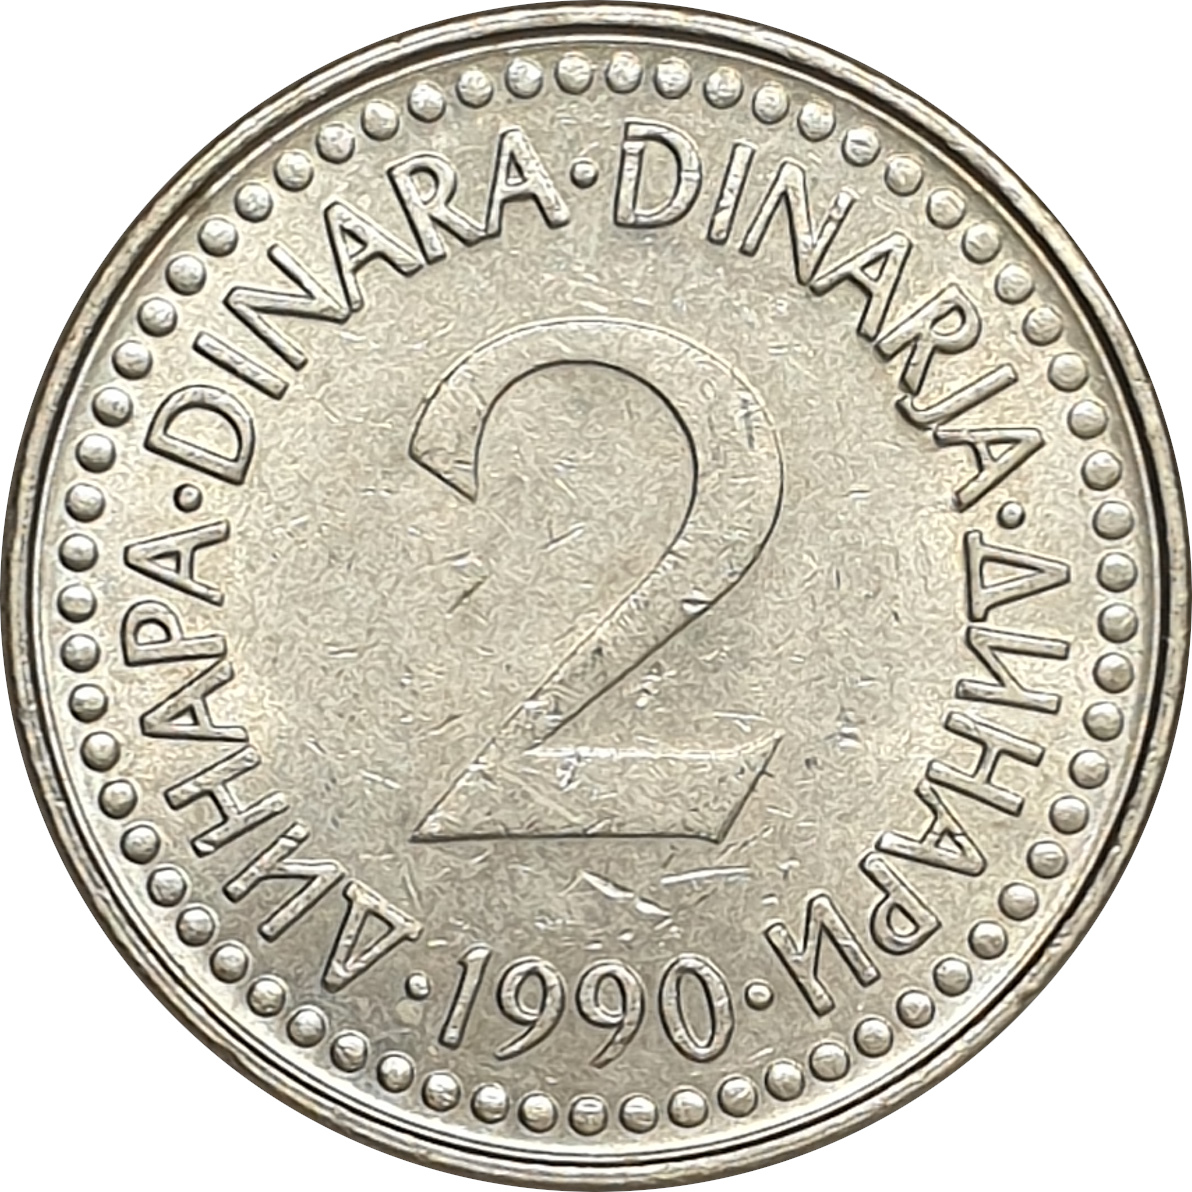 2 dinara - 1990 issue